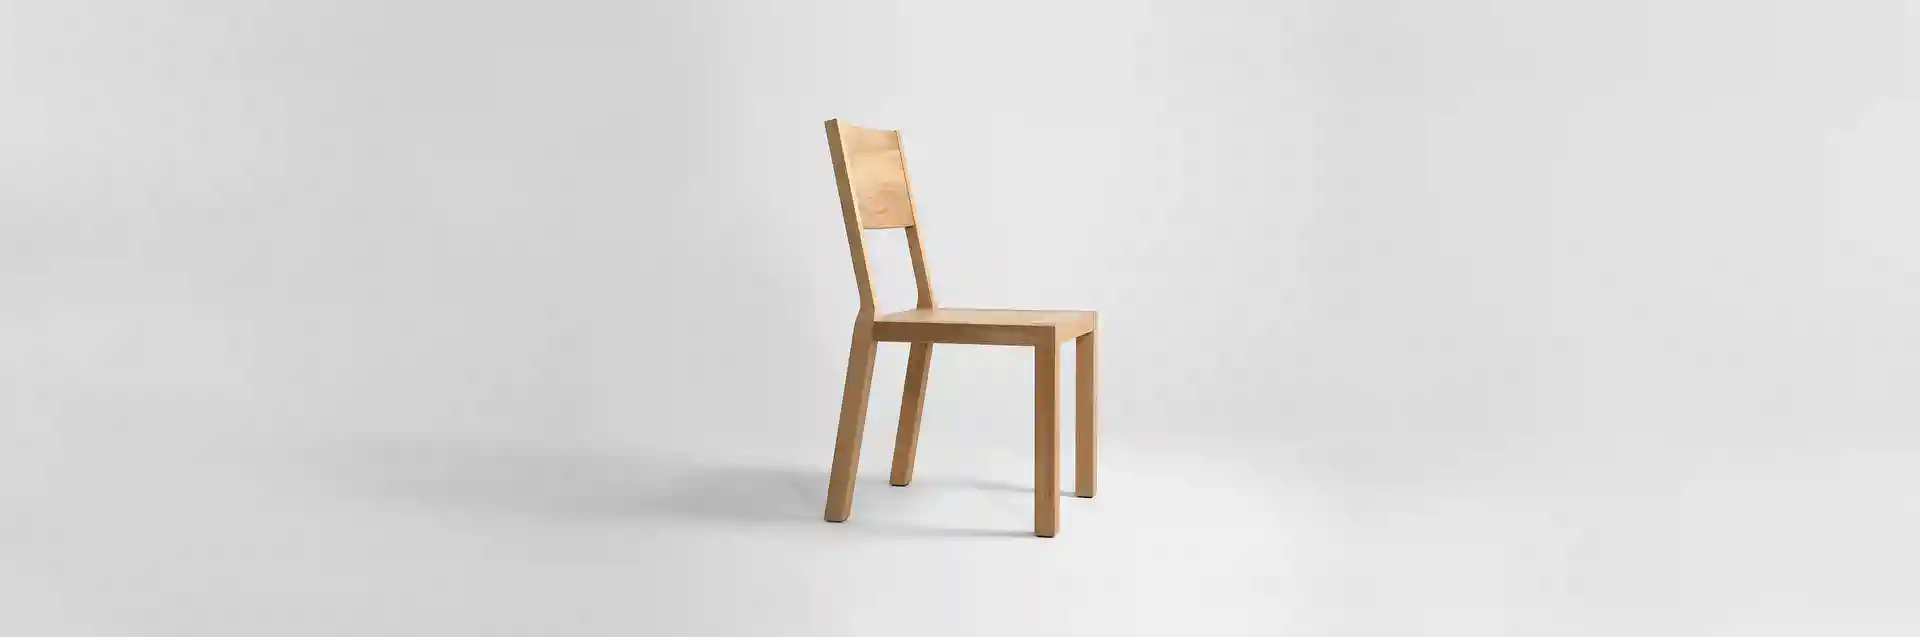 [Translate to german:] Krzesło z drewna dębowego MILONI BLOX, Kolor: 03: Natural, Wymiary: Dł: 45 x Sz: 44 x Wys: 45 cm, polskie krzesła z drewna, drewniane krzesło, dębowe krzesła